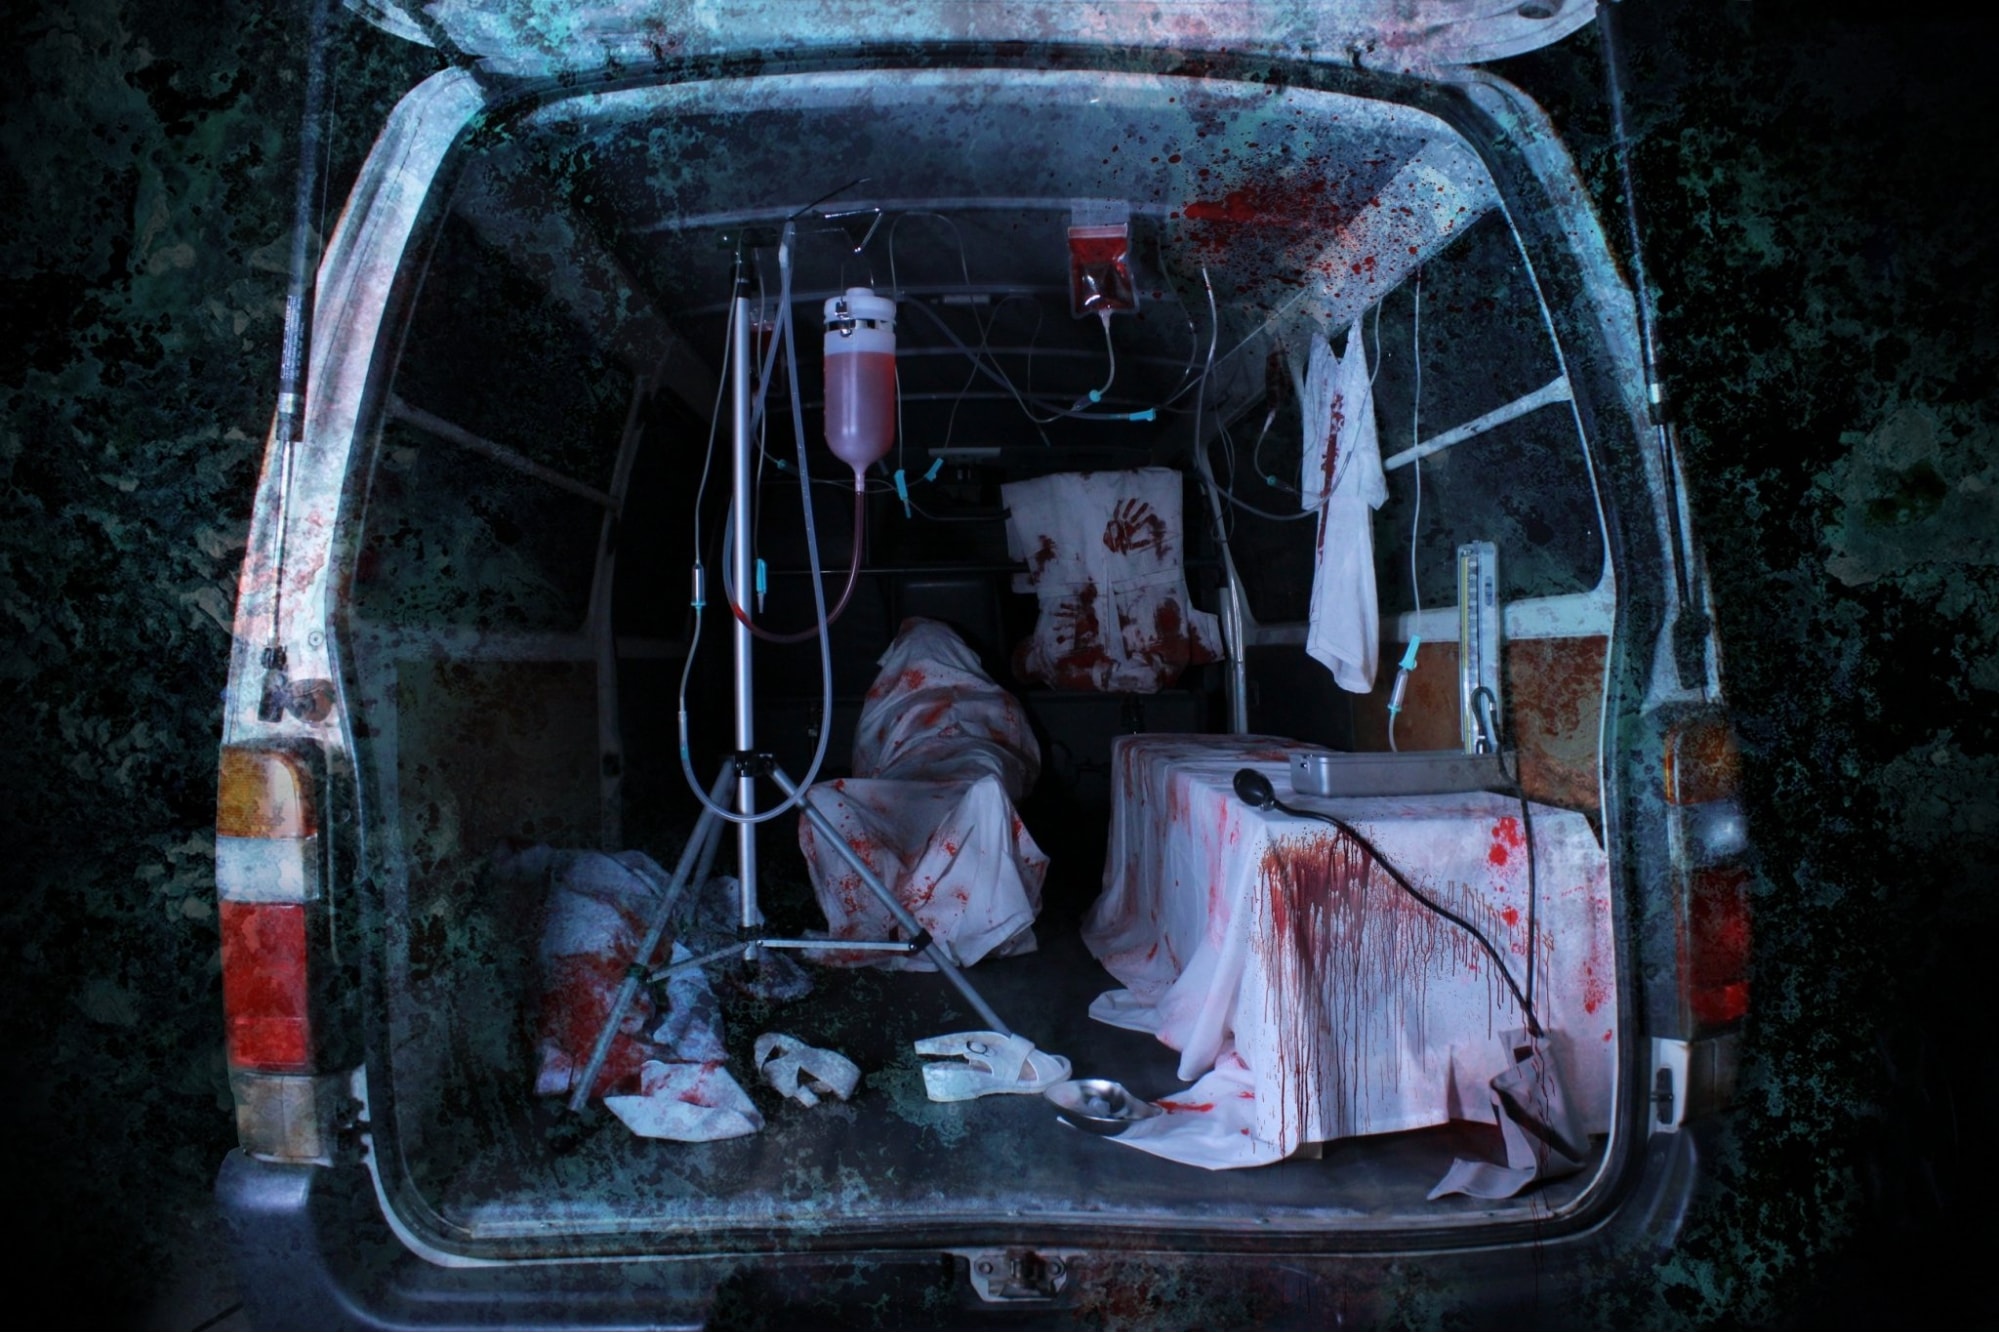 screambulance - inside the ambulance